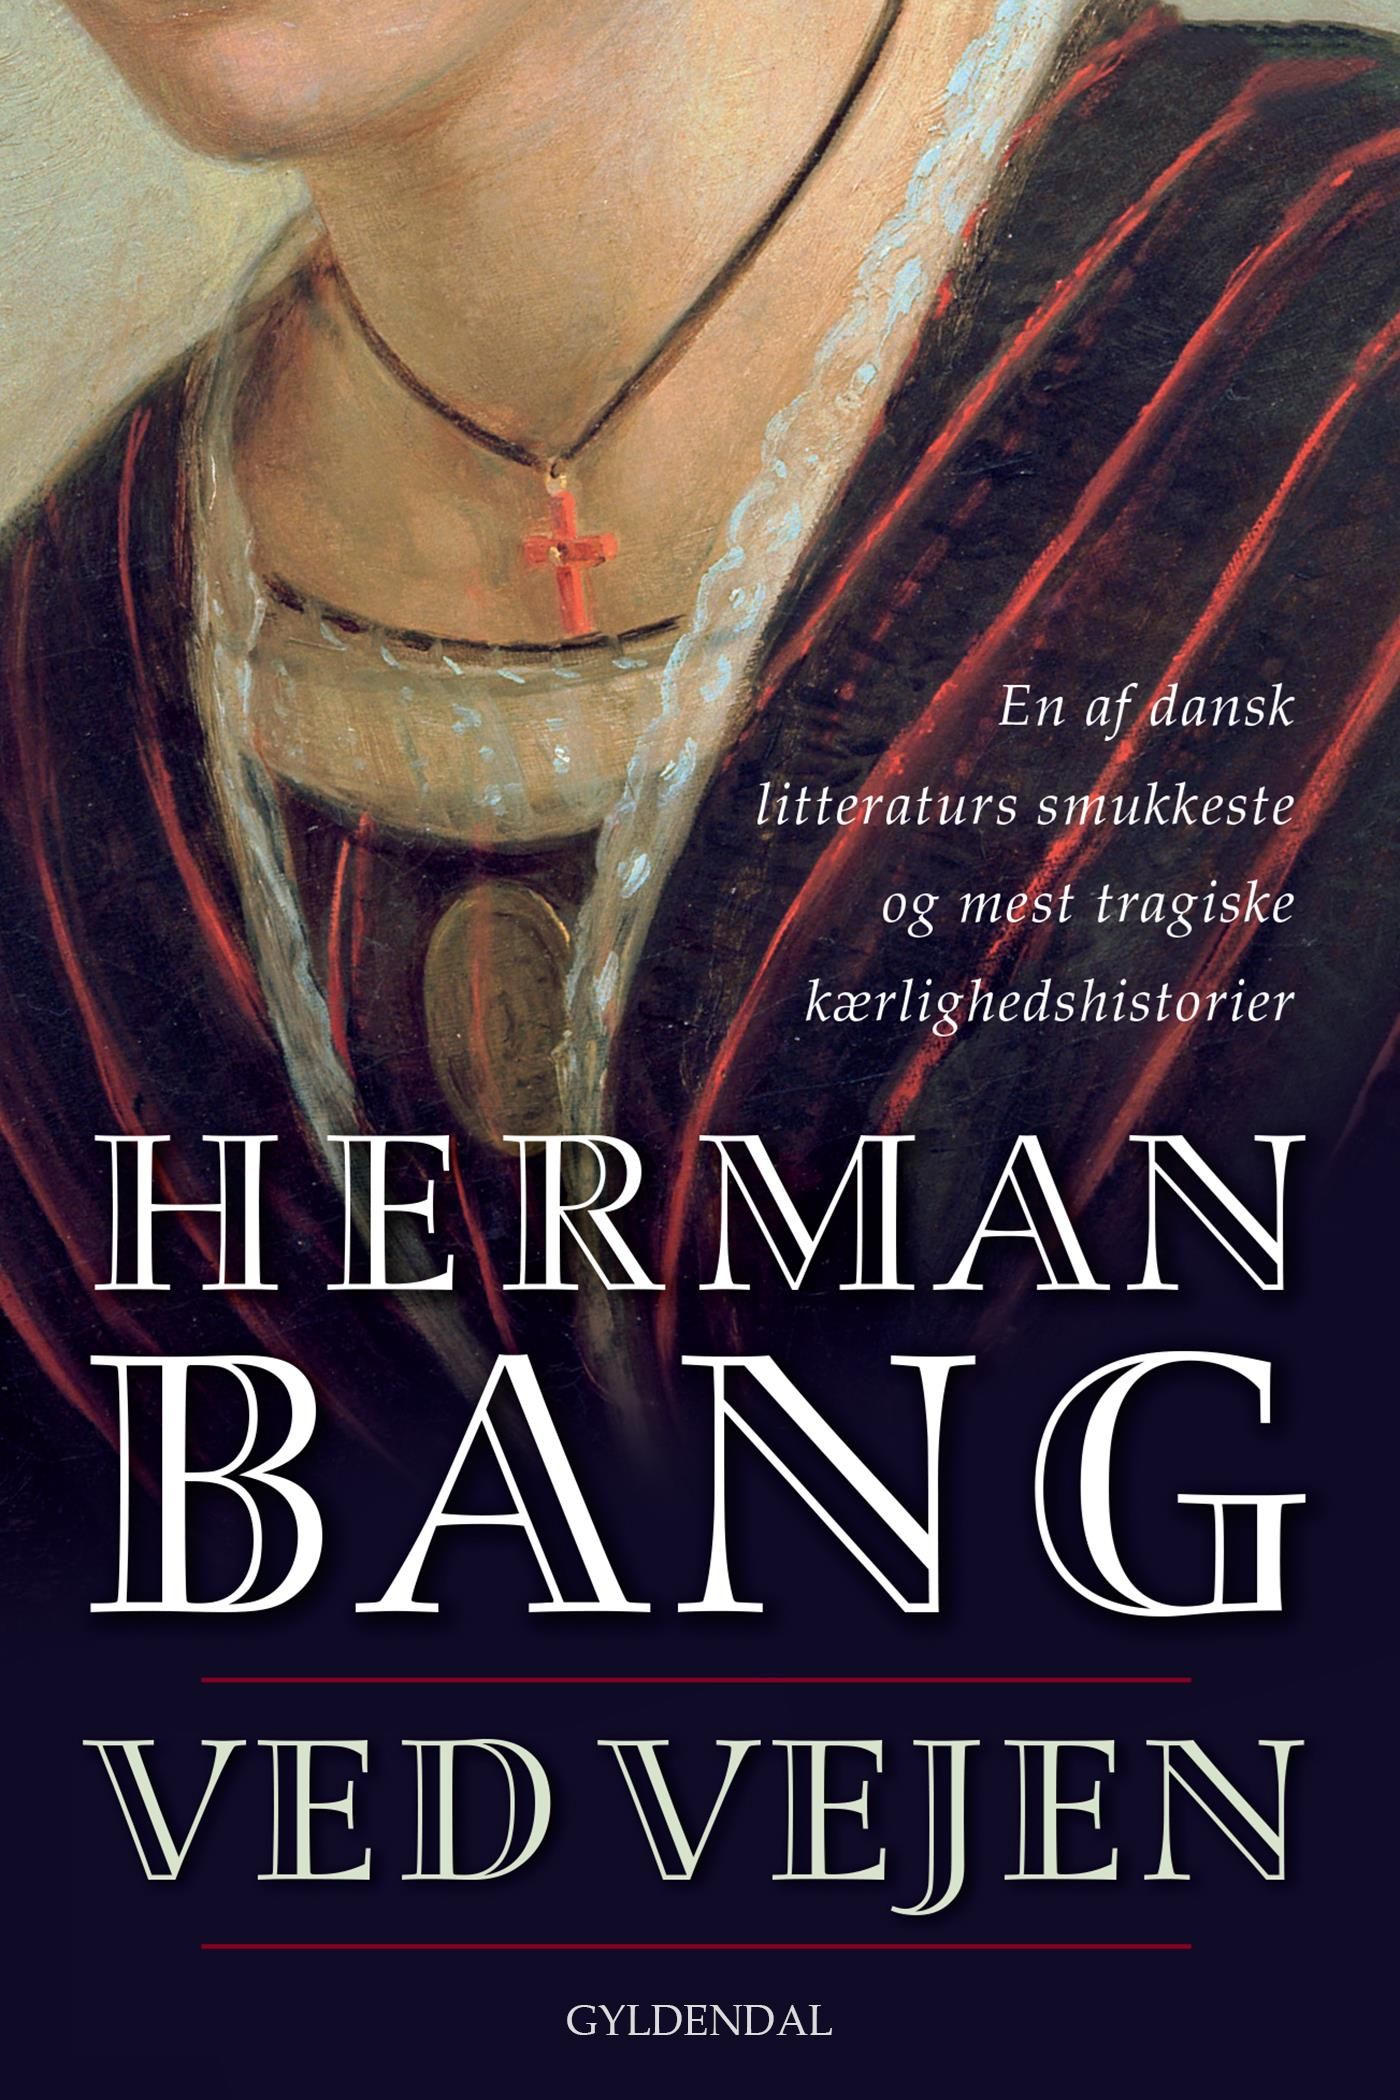 Ved Vejen, eBook by Herman Bang